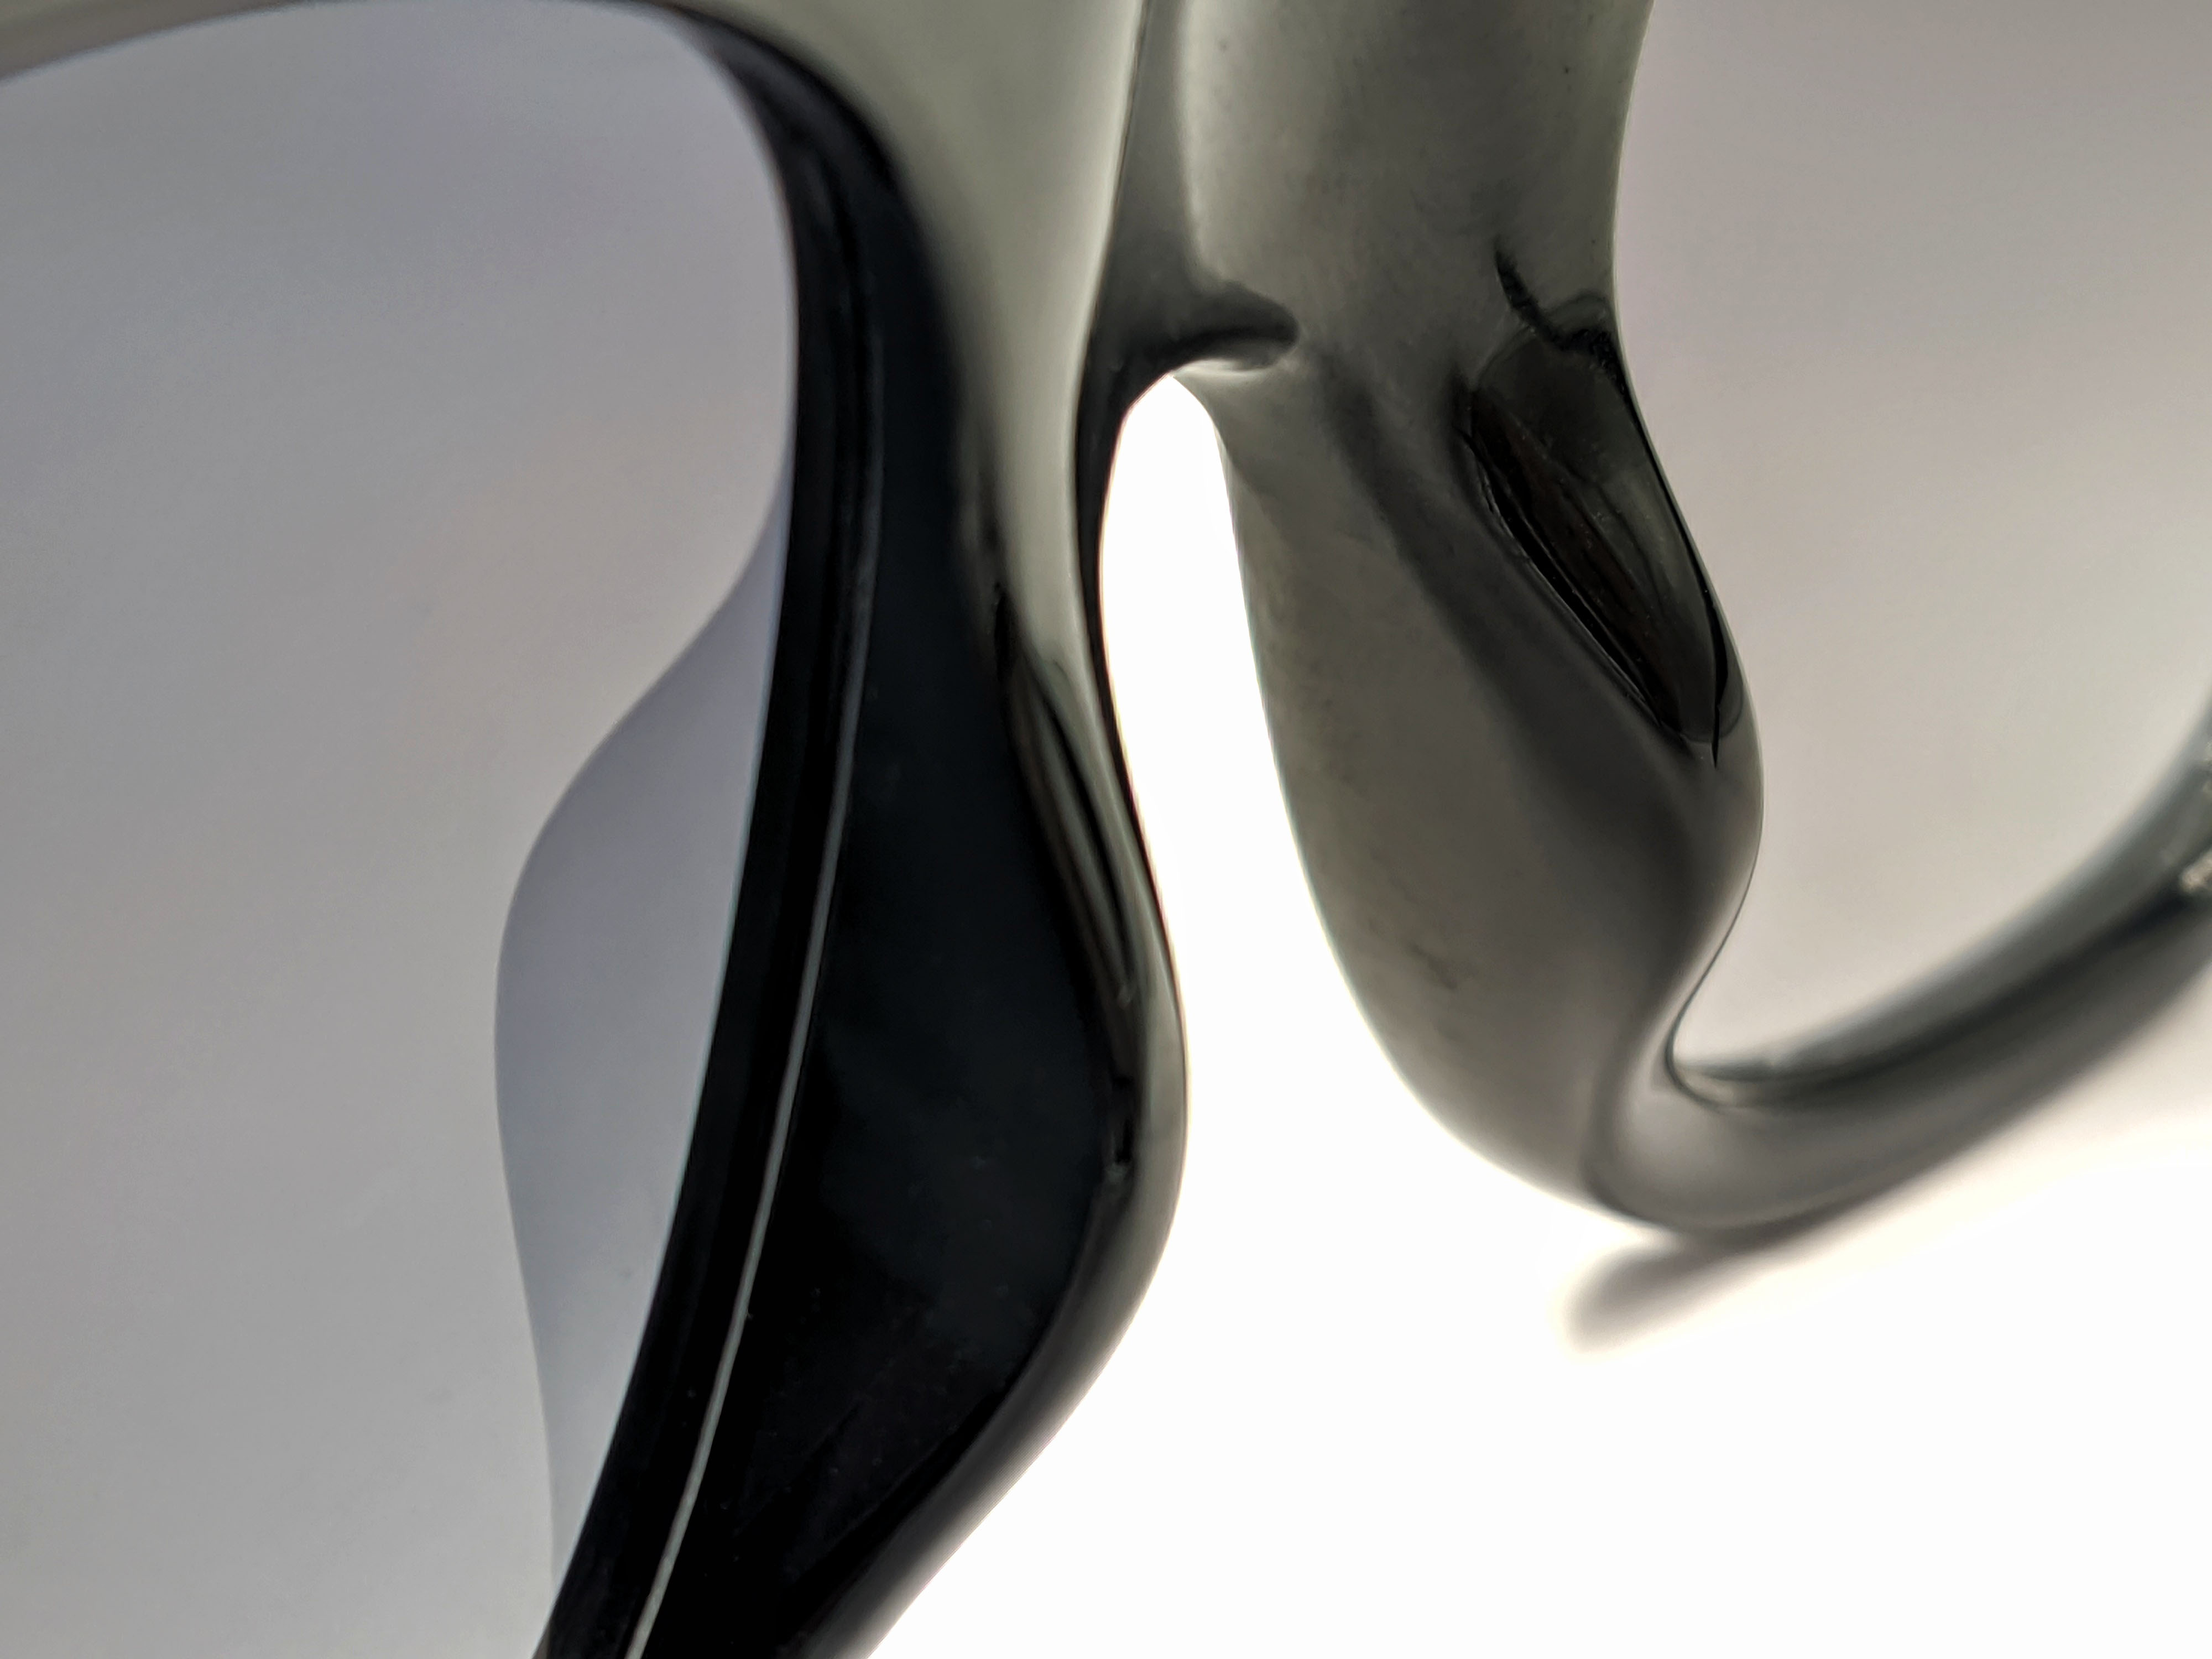 Gafas de sol polarizadas con protección UV personalizadas con montura de diamante de acetato negro para mujer, gafas de sol de gran tamaño 2022 para hombre, moda de lujo UV400